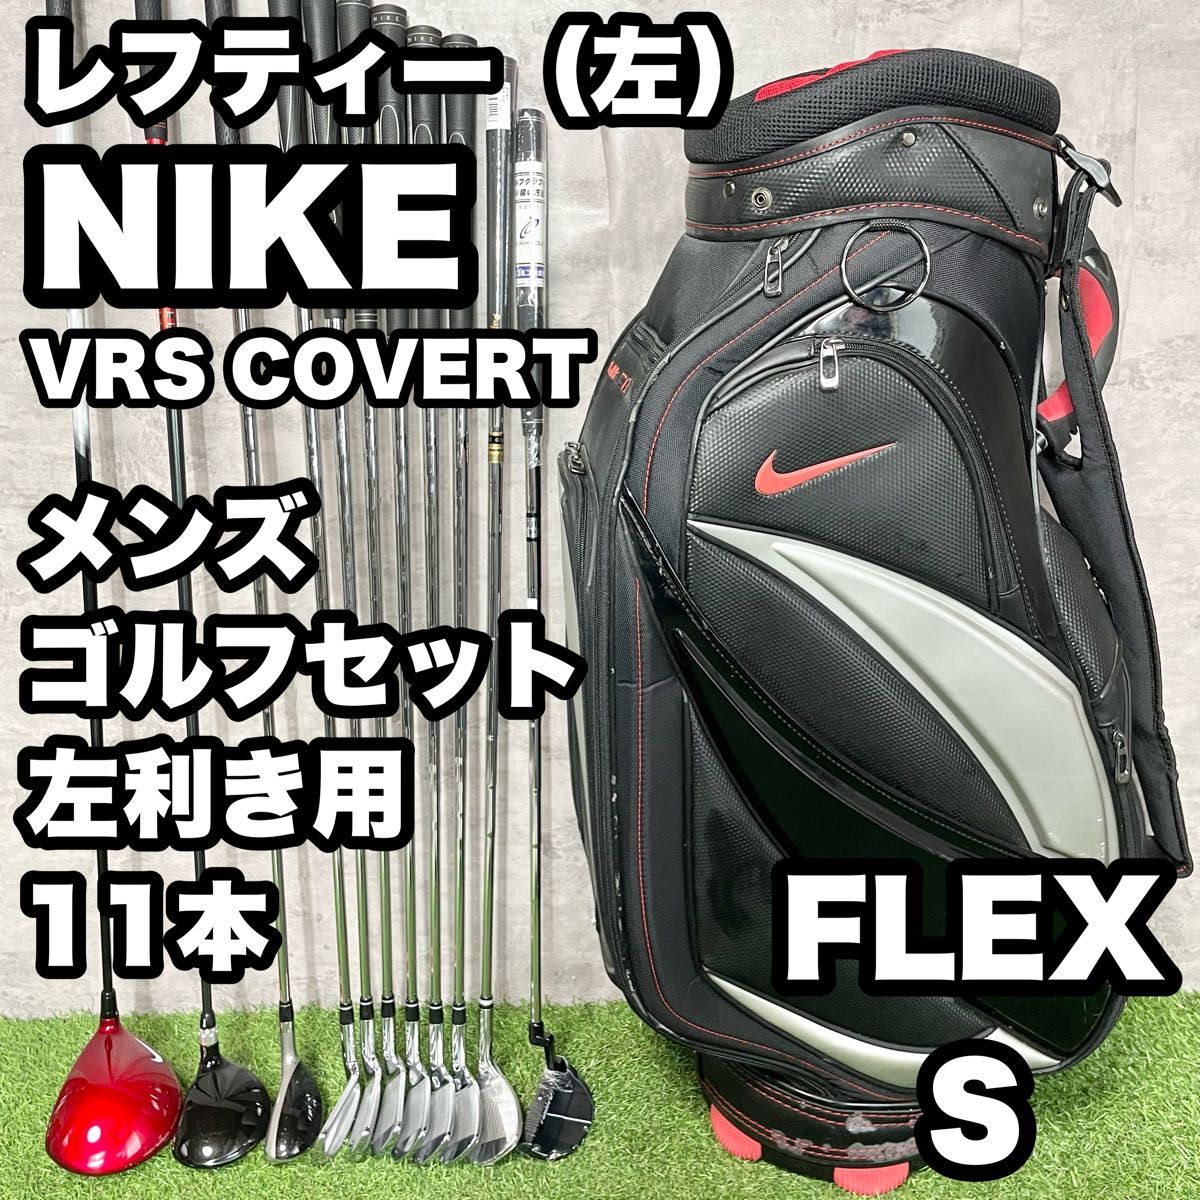 【貴重な左利き/レフティー】NIKE ナイキVRS COVERT ゴルフクラブセット メンズ S 11本 左